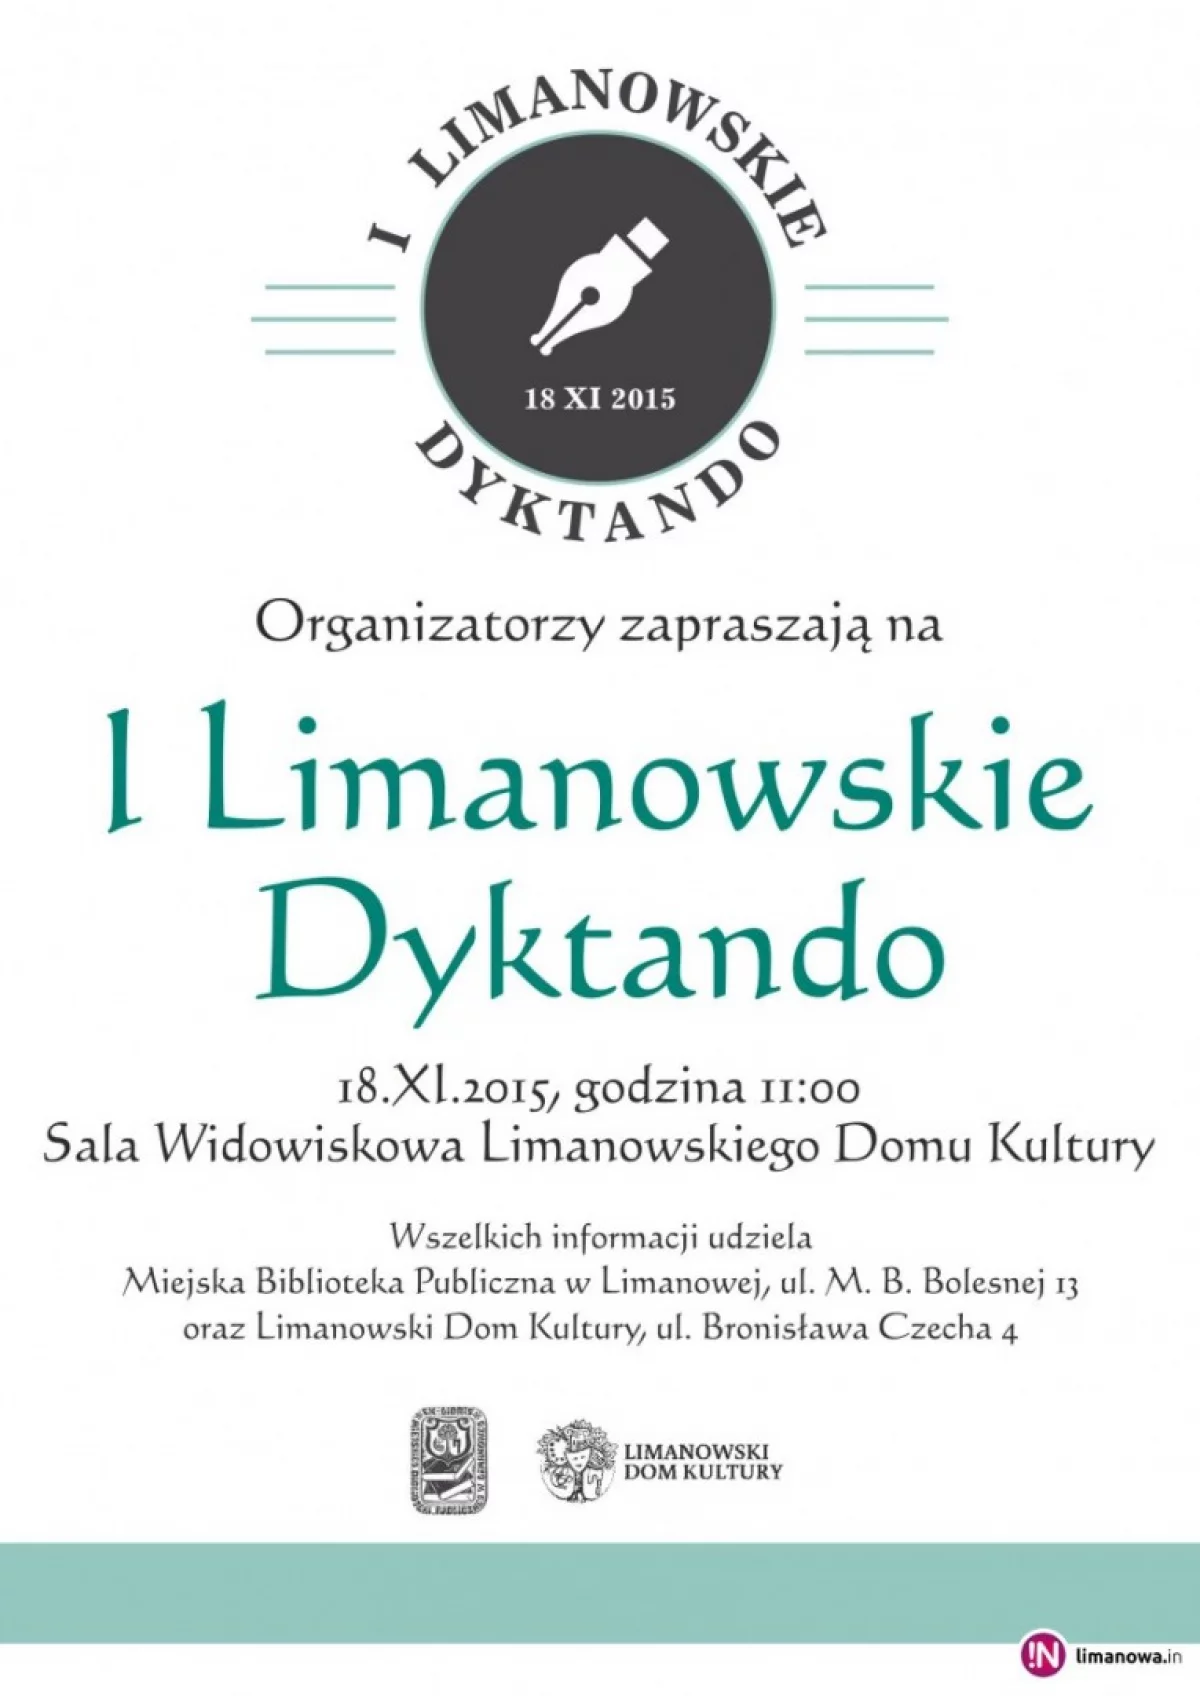 I Limanowskie Dyktando - jutro poznamy limanowskich mistrzów ortografii